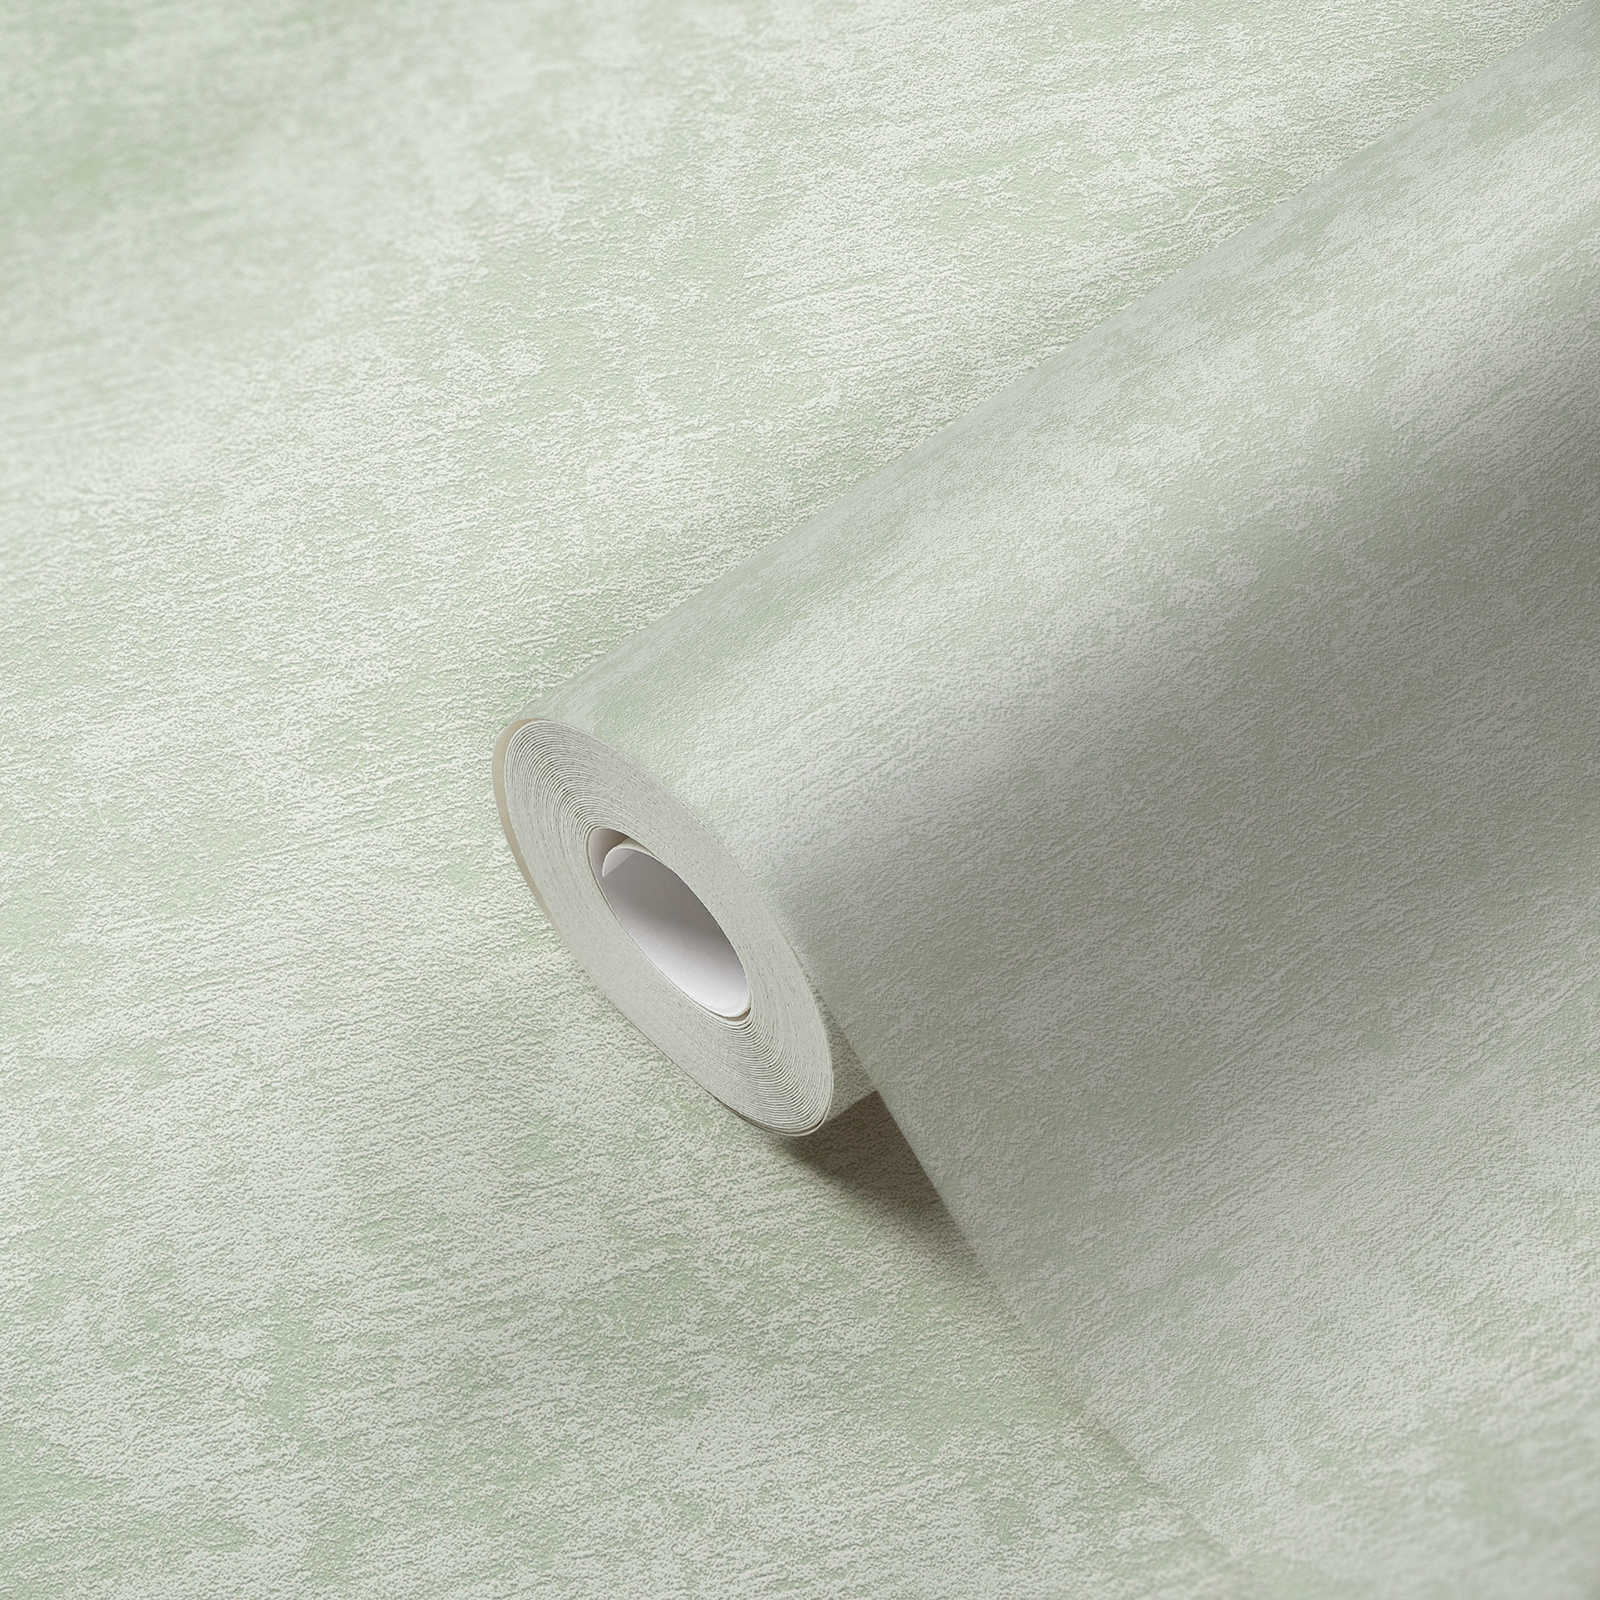             Carta da parati in tessuto non tessuto con struttura in gesso ed effetto texture - verde
        